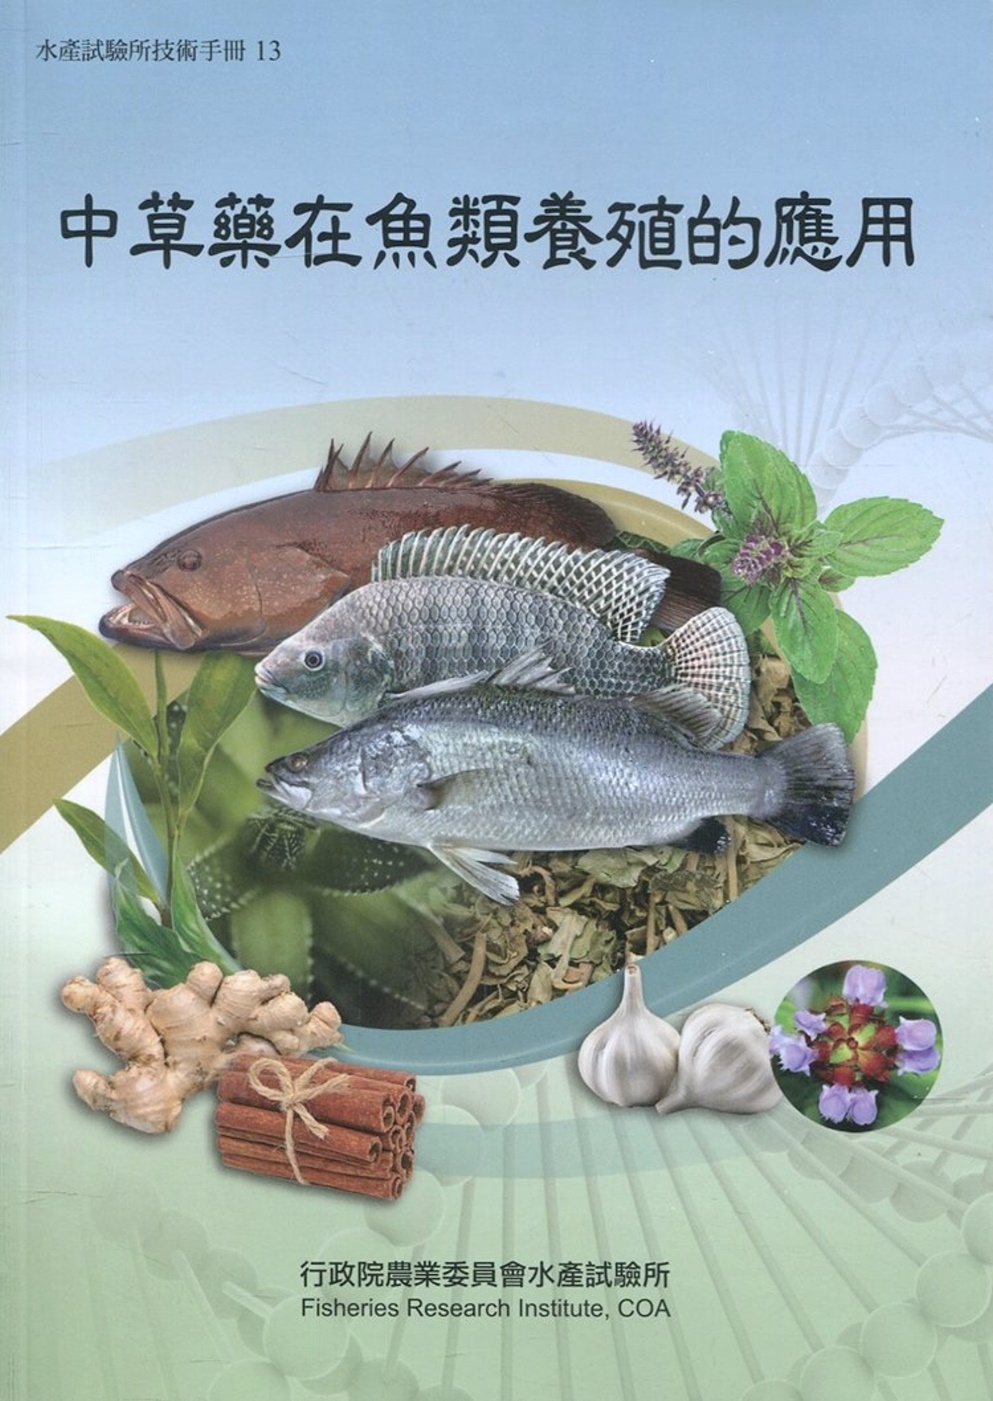 中草藥在魚類養殖的應用